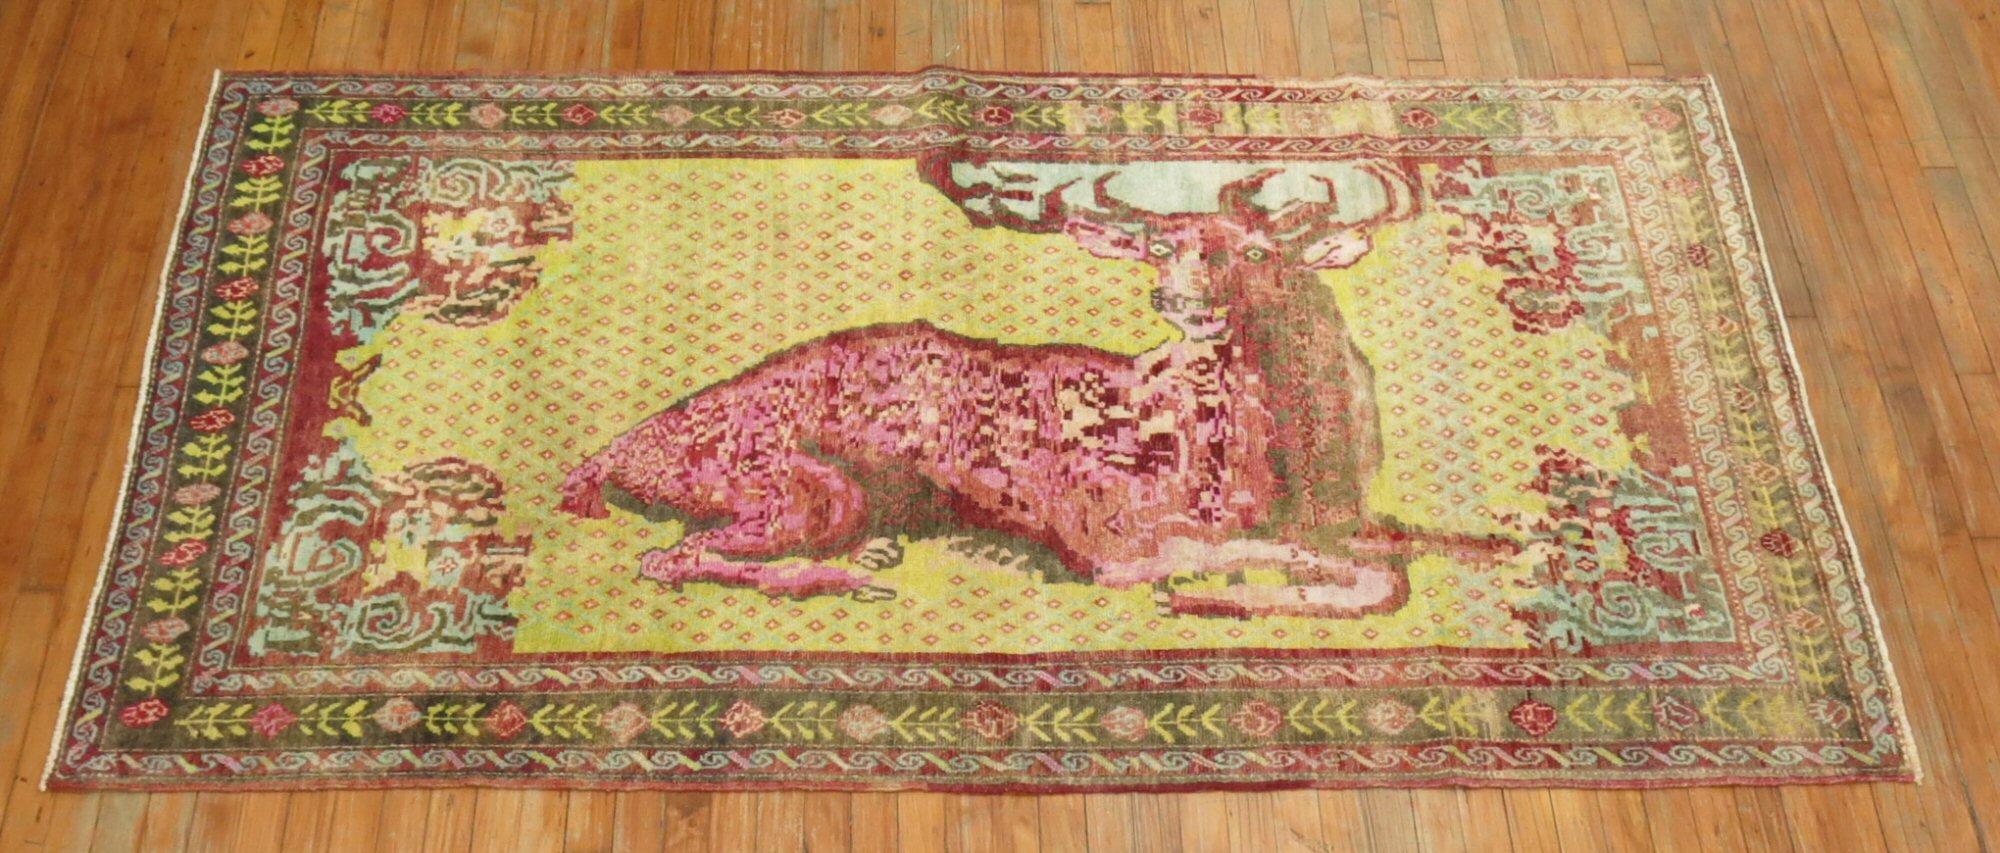 Jolly Deer Pictorial Karabagh Conversation Rug For Sale 3